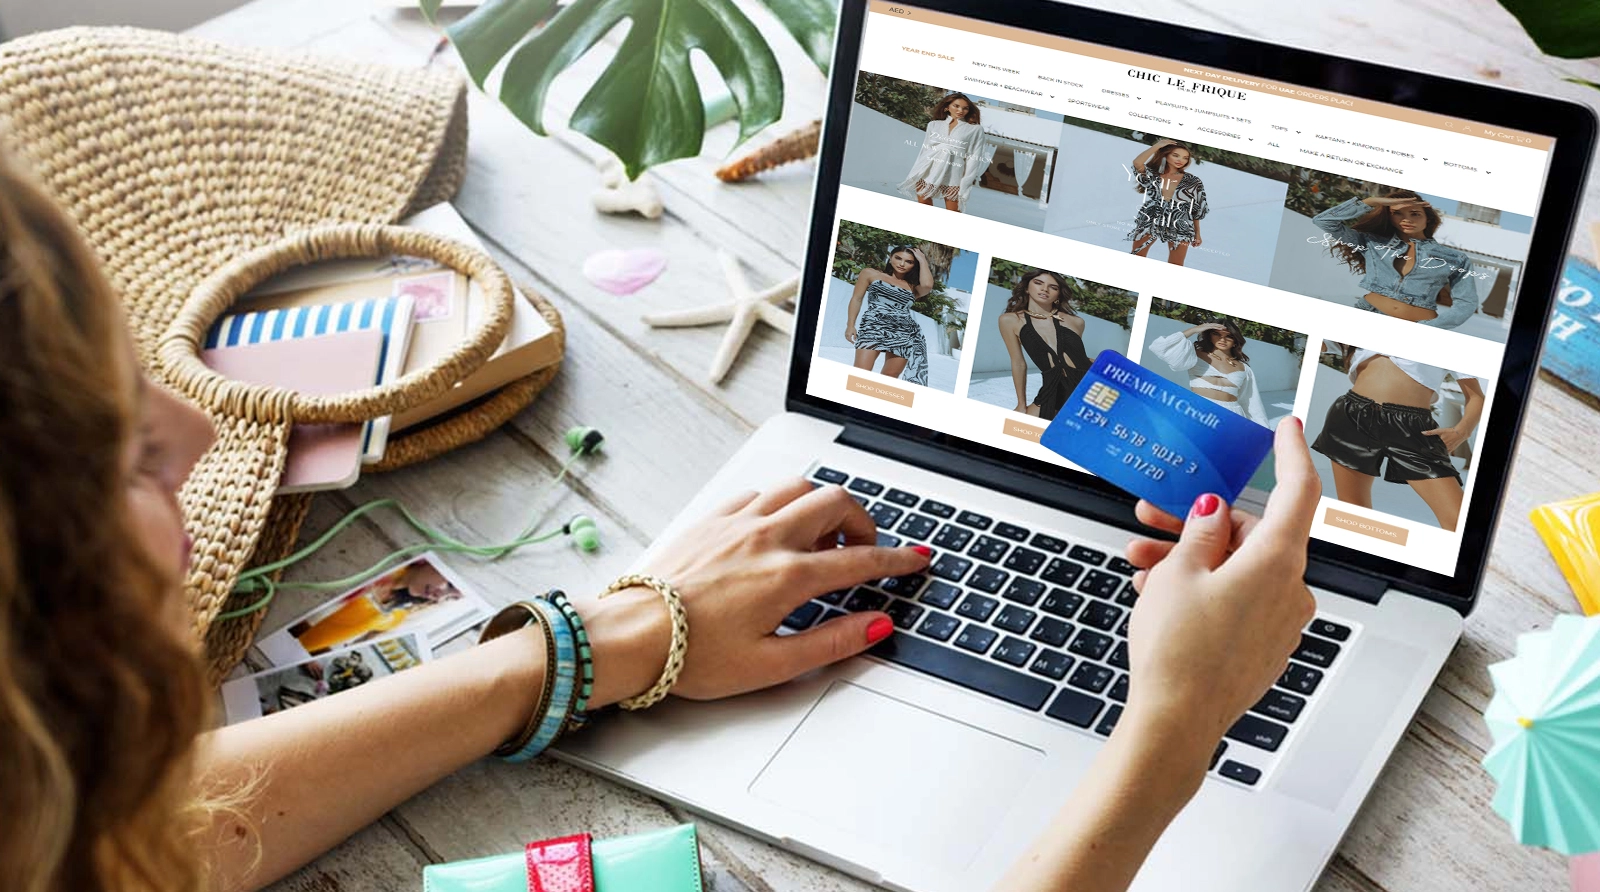 Best online shopping websites for women Dubai